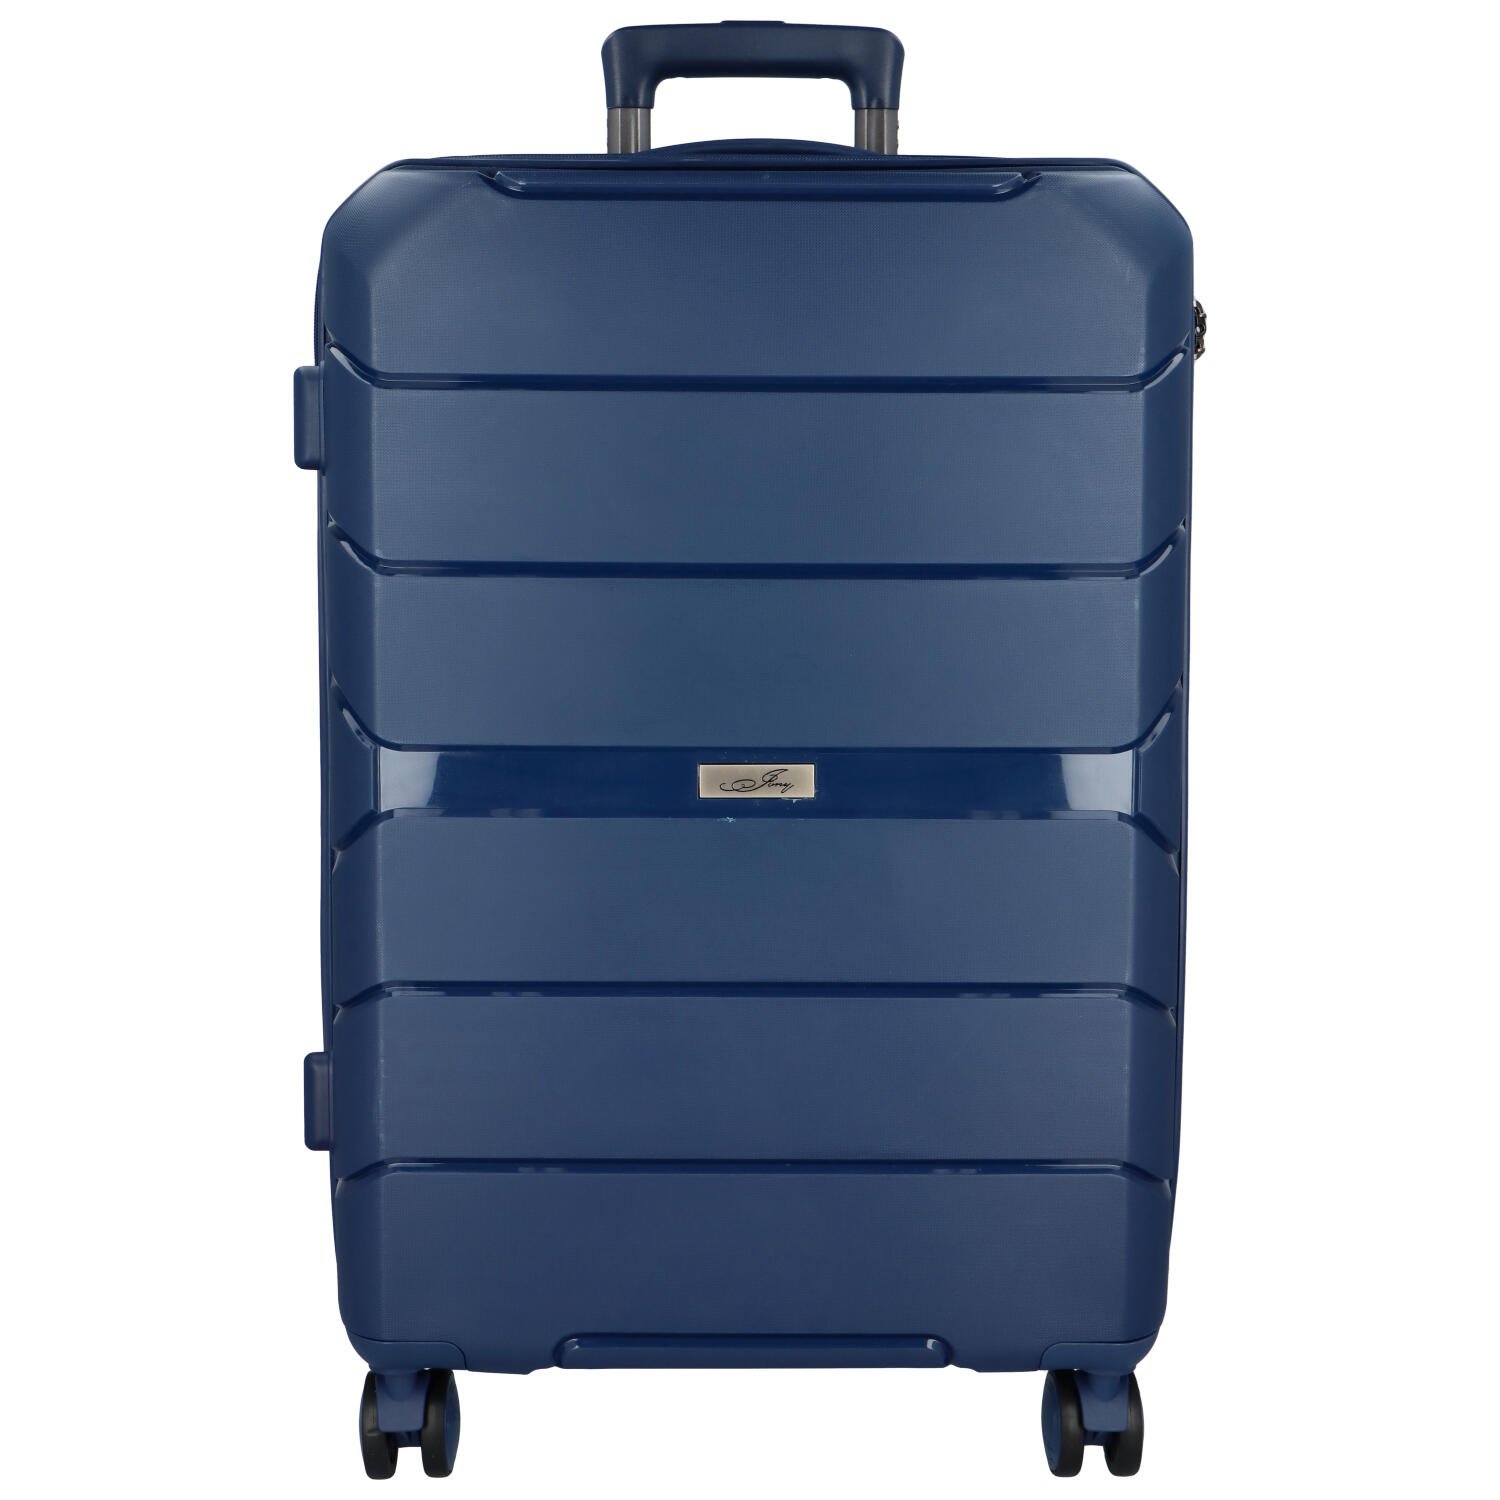 Cestovní plastový kufr Franco velikosti M, modrý